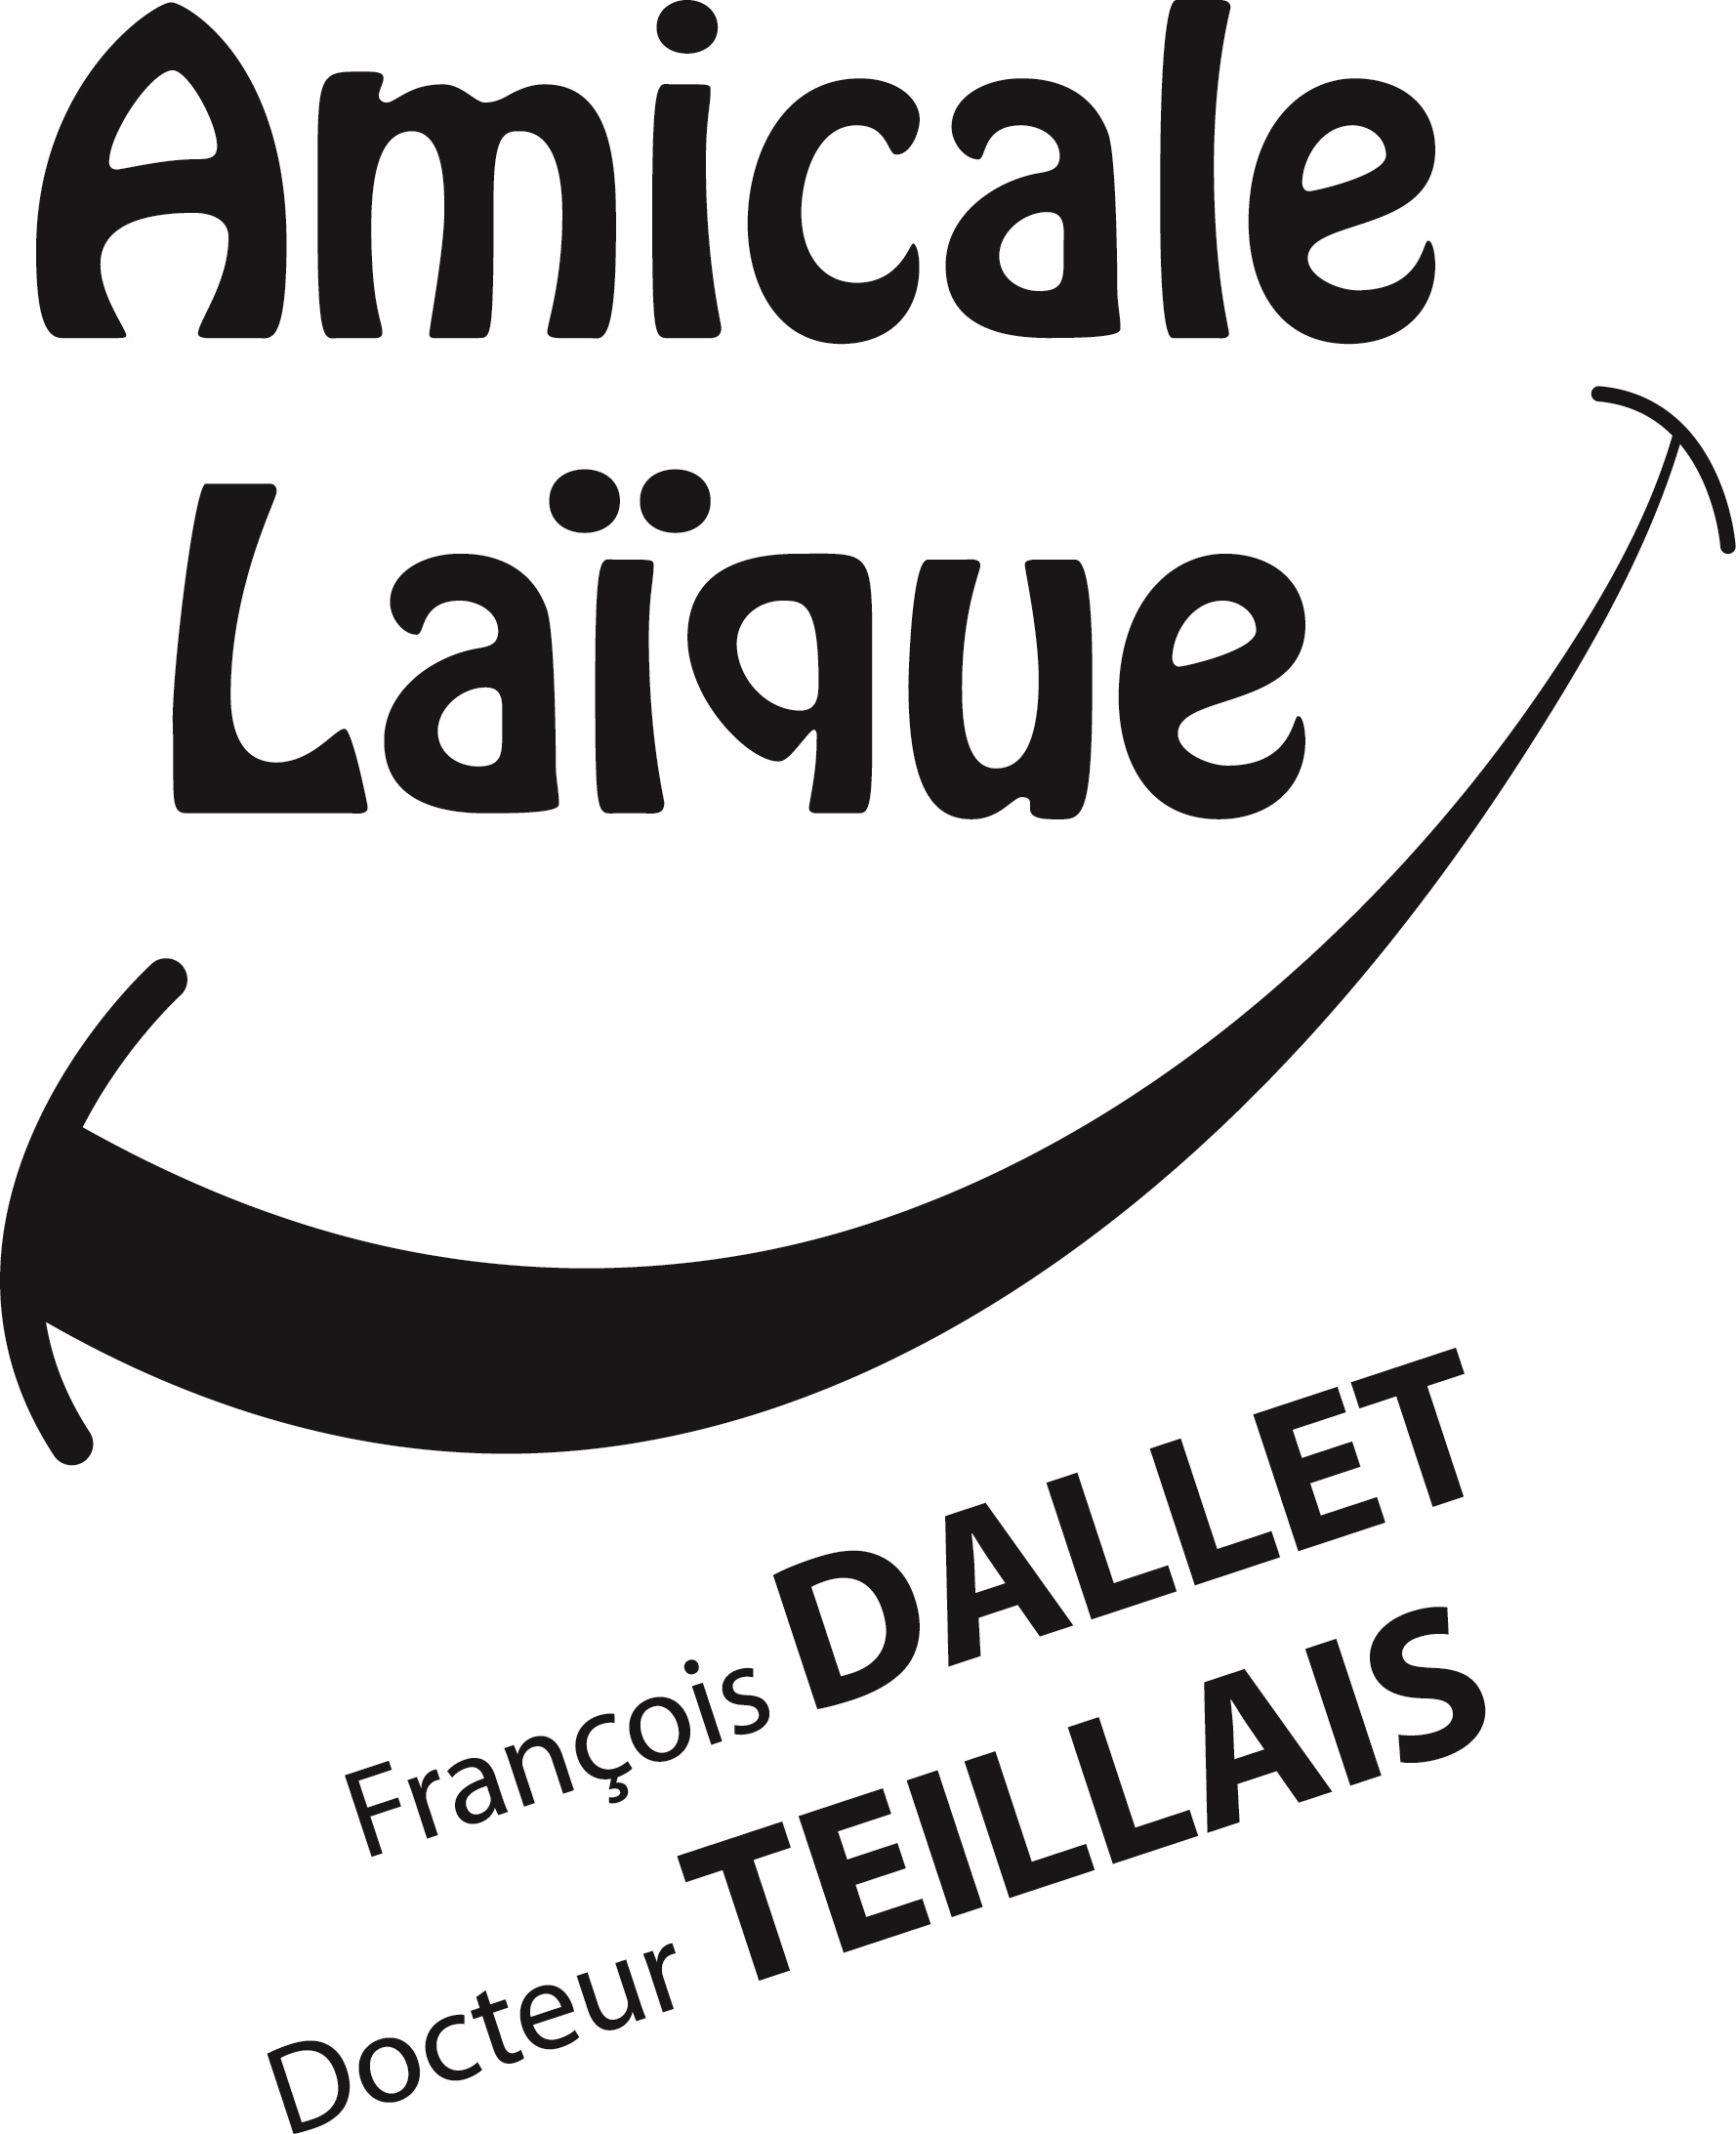 Amicale Laïque François Dallet - Docteur Teillais